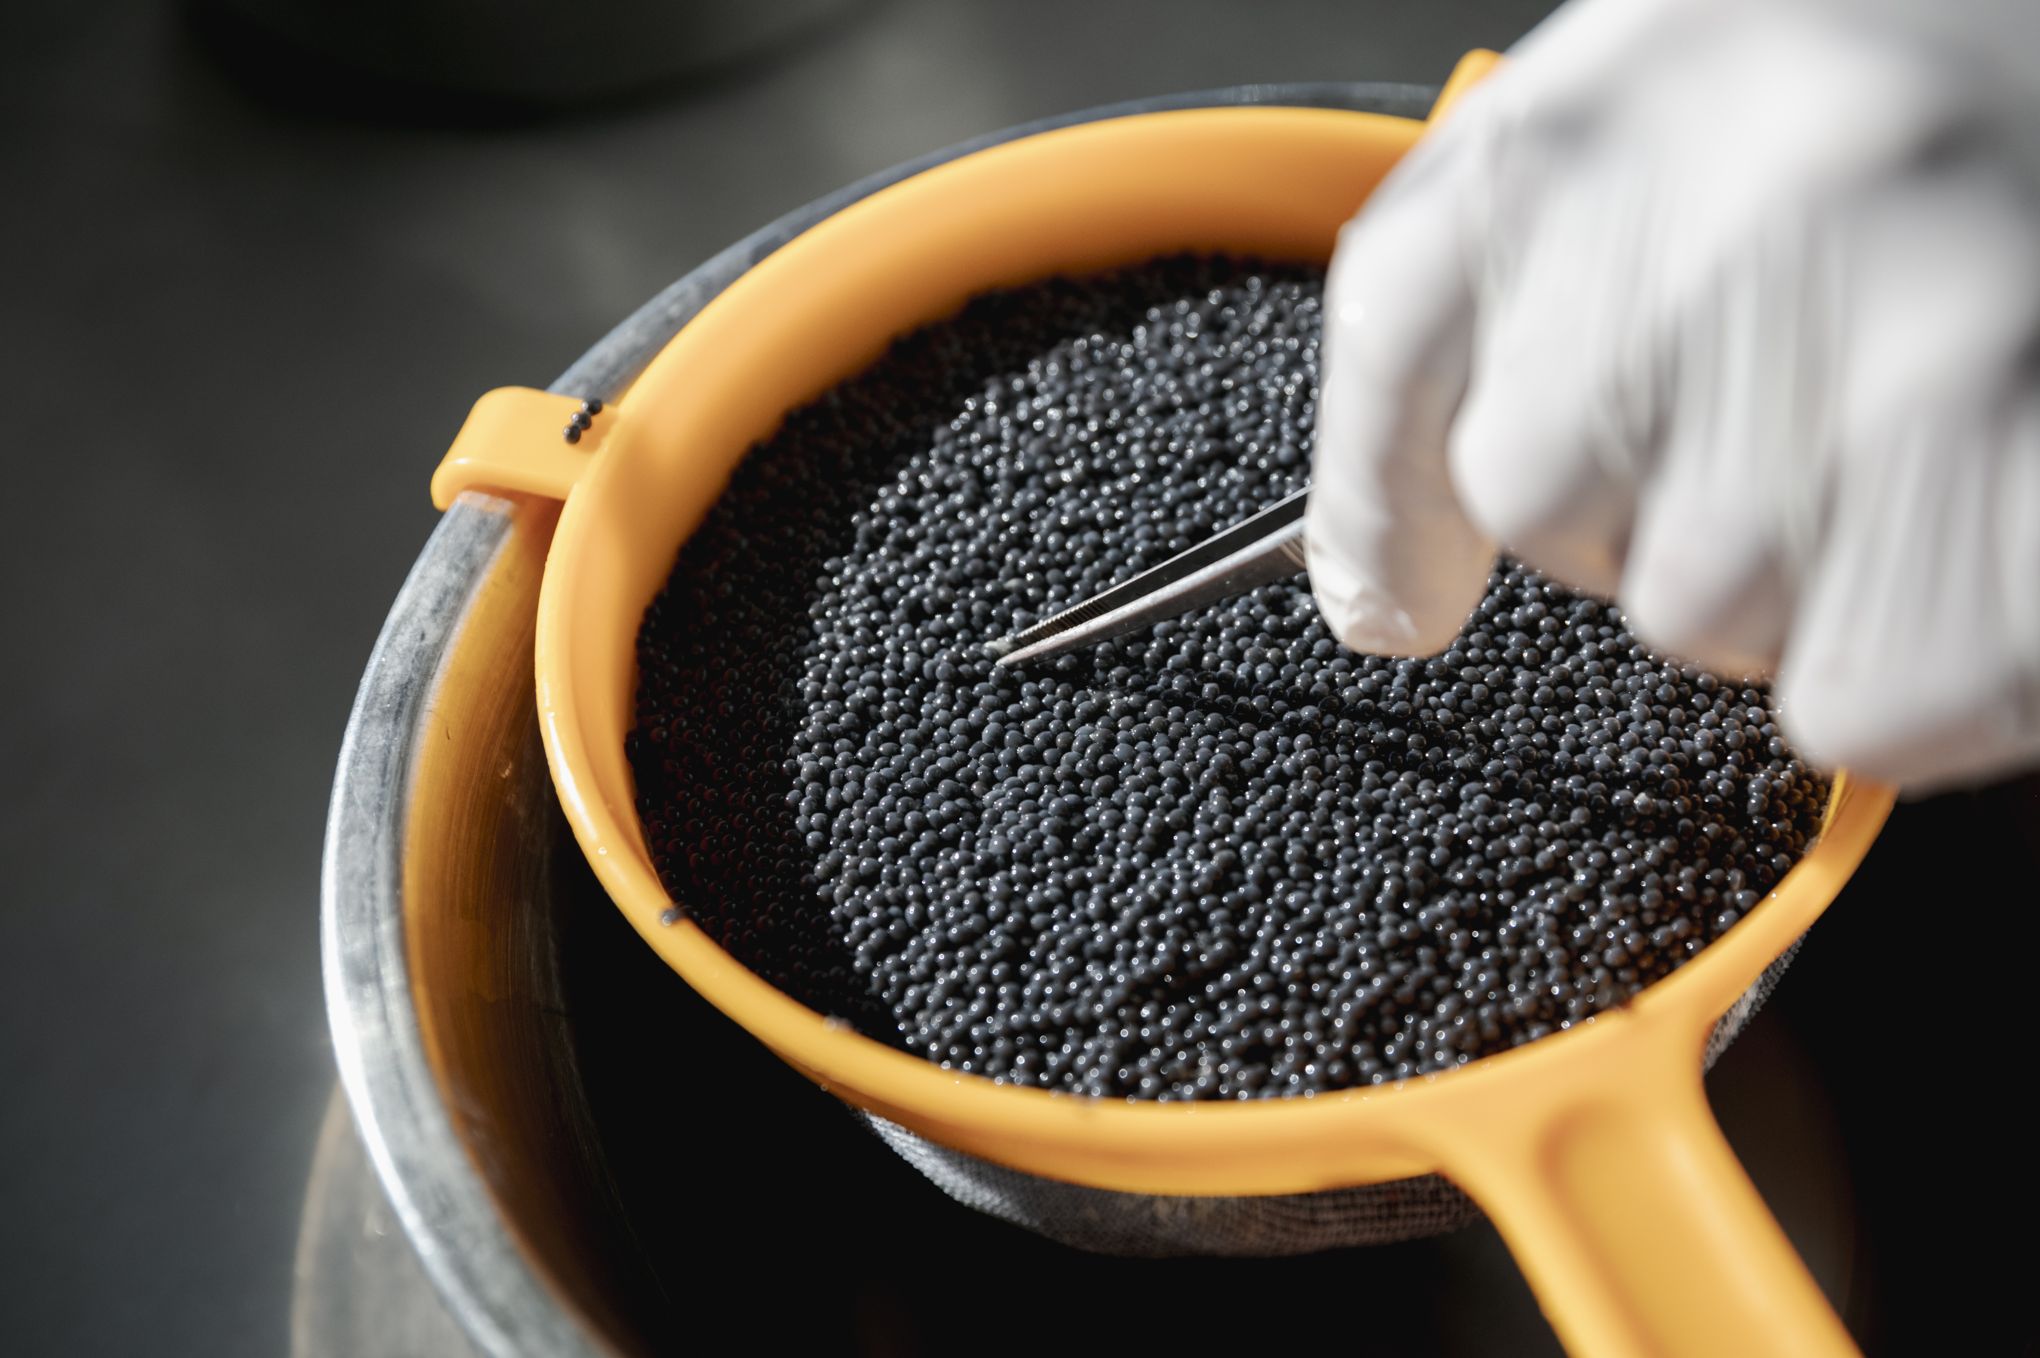 Huile d'olive arôme truffe noire - La Maison Nordique